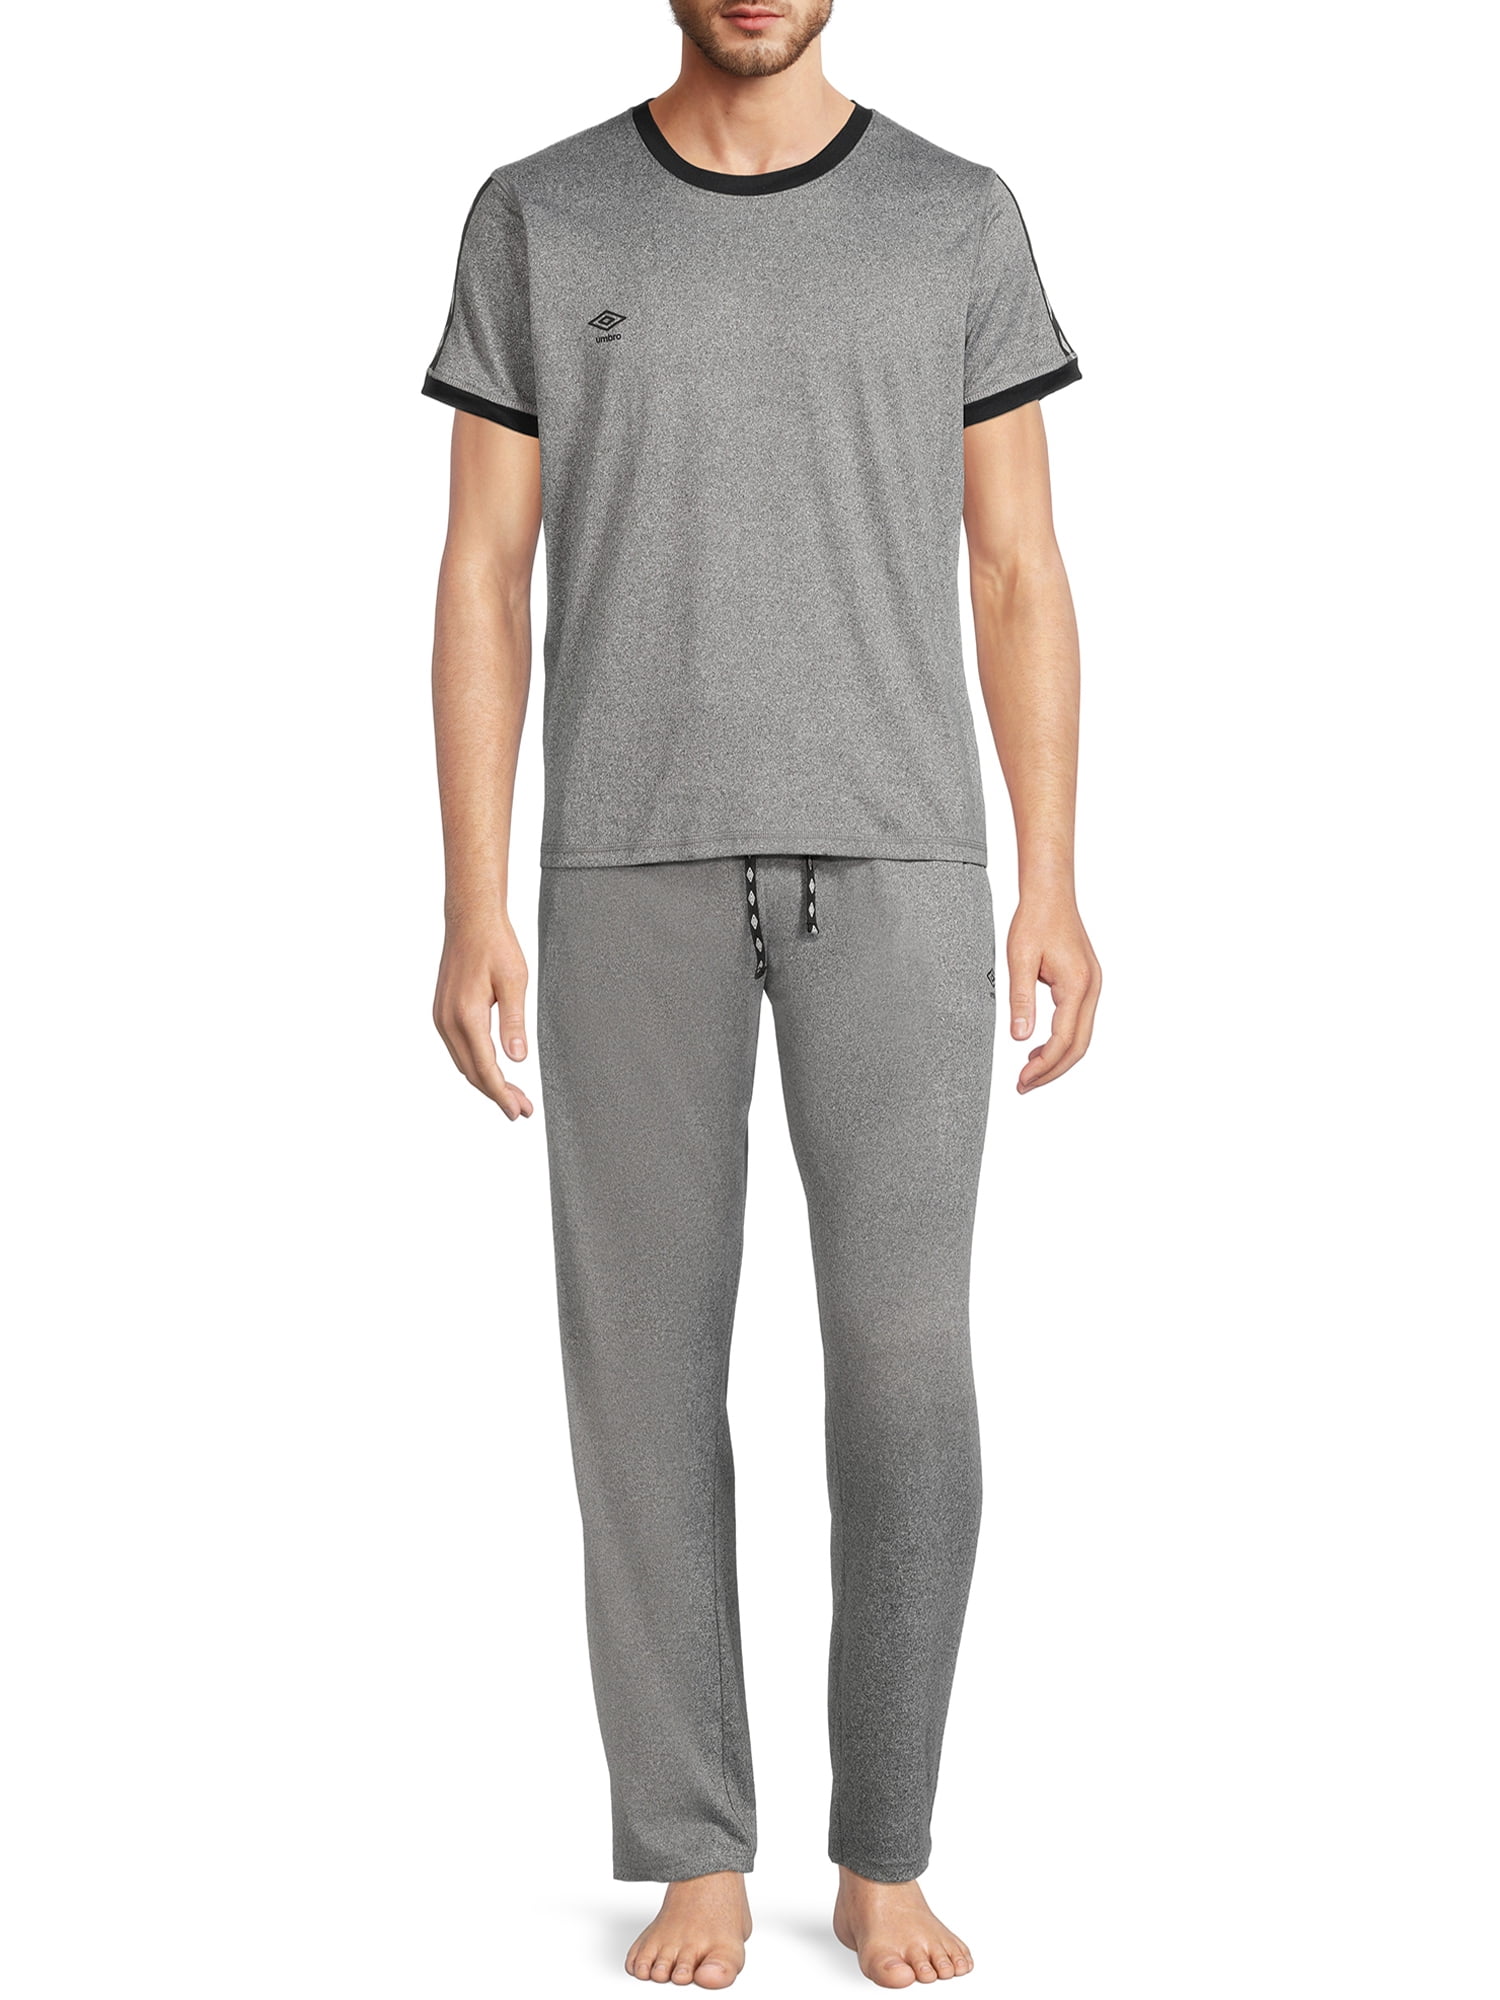 Umbro, Adult Mens, 2-Piece Tee Shirt and Sleep Shorts Pajamas Set, Sizes  S-2XL